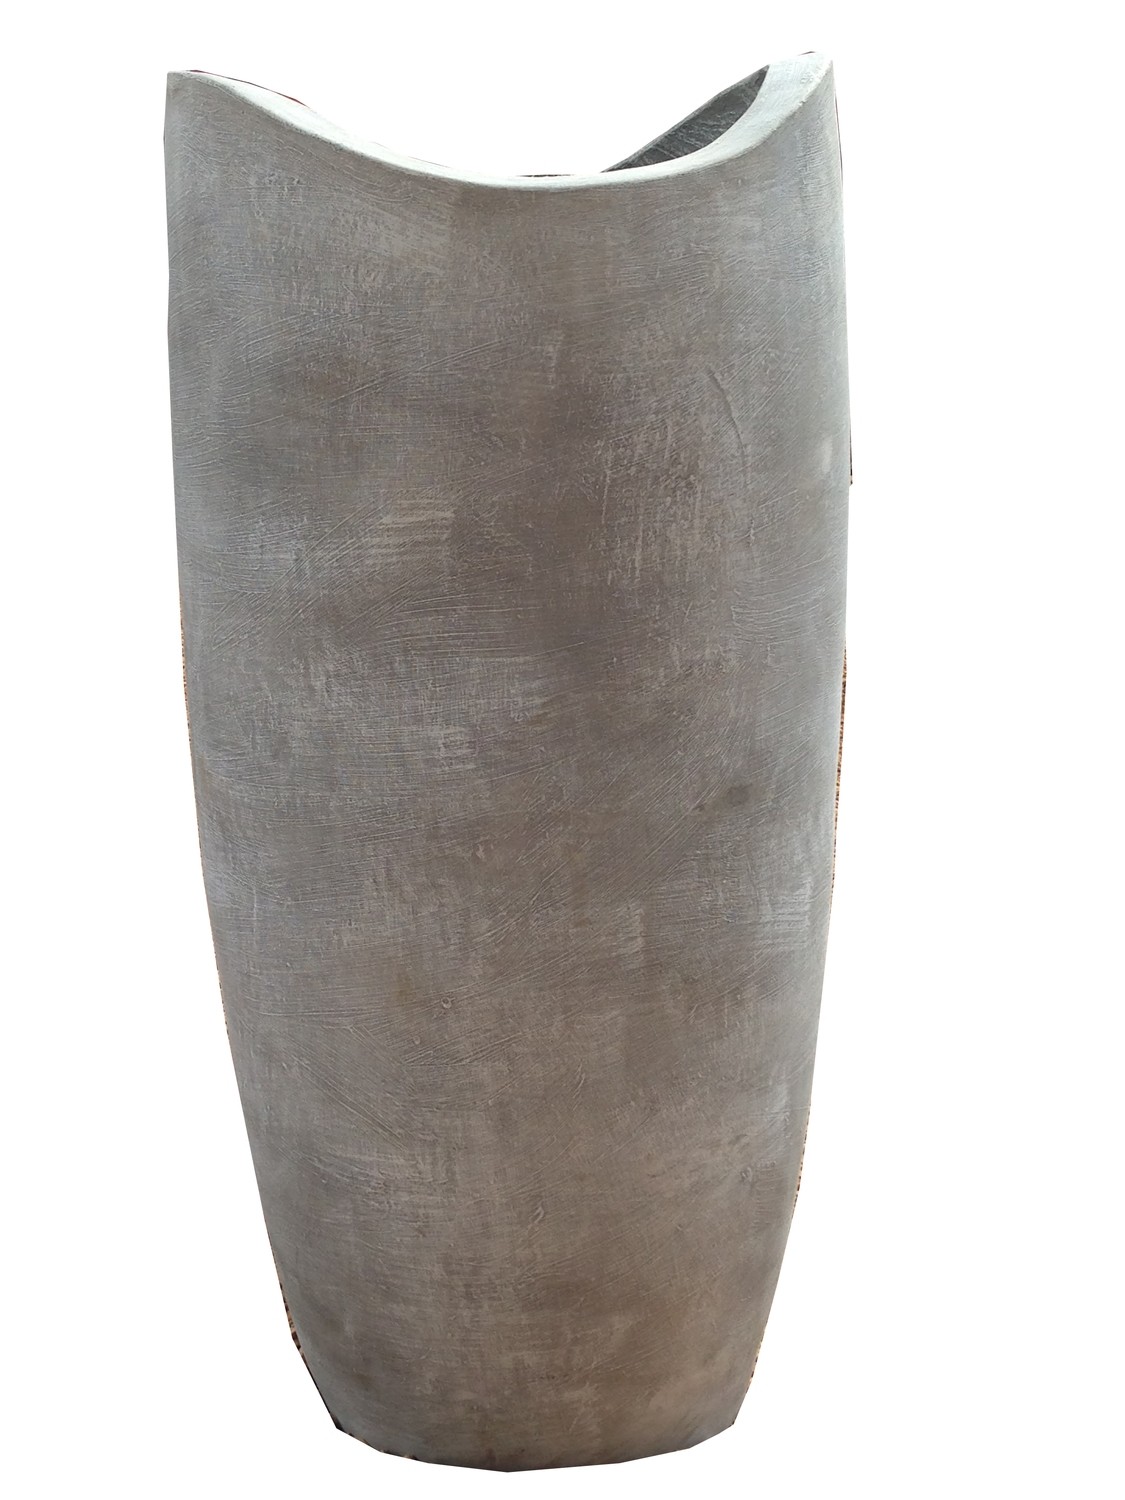 Zip Vase Large Whitewash Finish - H690mm - 41kg